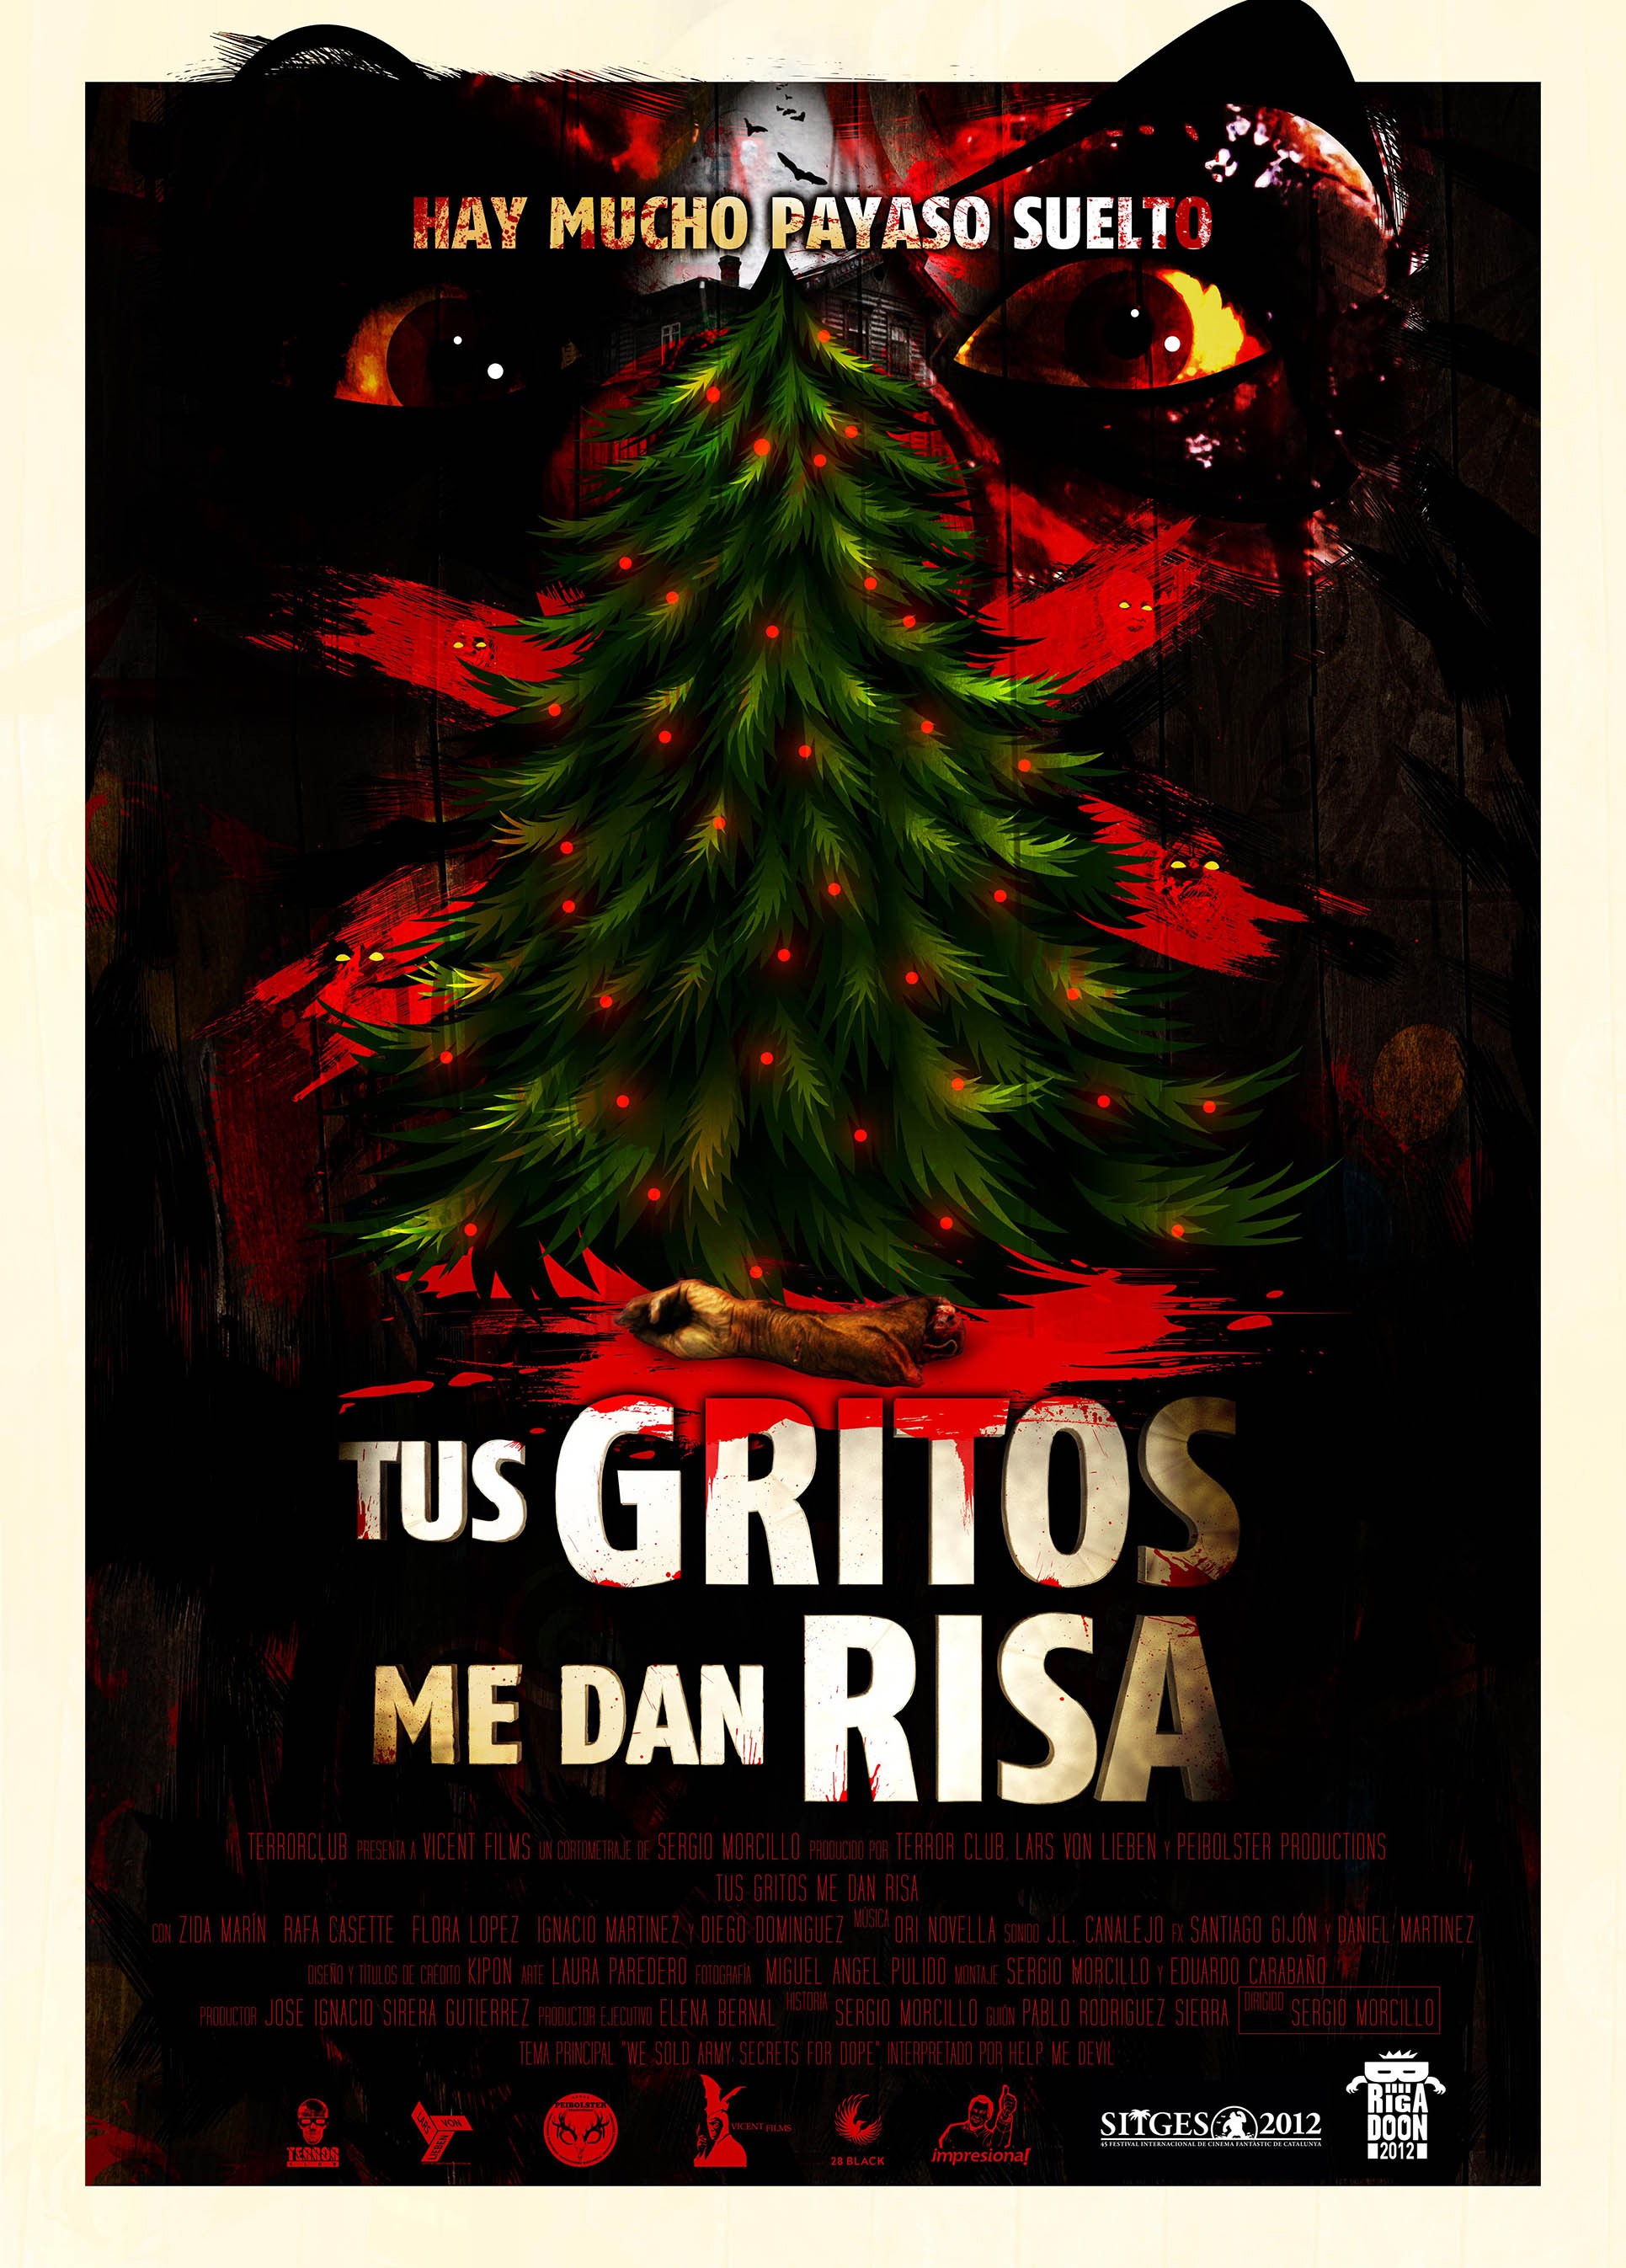 Mega Sized Movie Poster Image for Tus gritos me dan risa